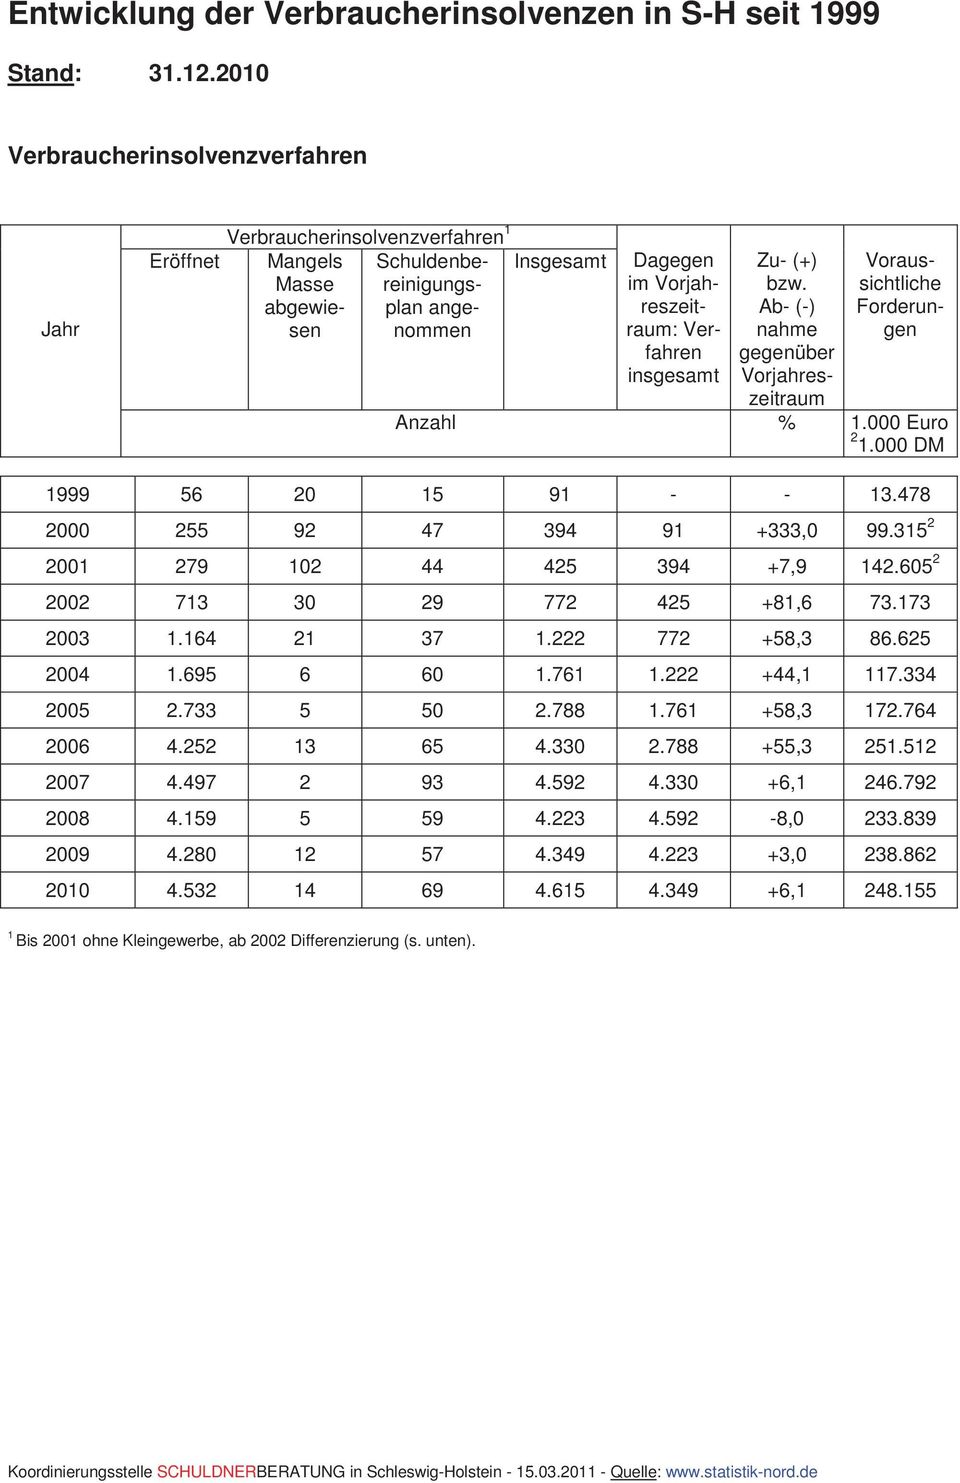 insgesamt Zu- (+) bzw. Ab- (-) nahme gegenüber Vorjahreszeitraum Voraussichtliche Forderungen Anzahl % 1.000 Euro 2 1.000 DM 1999 56 20 15 91 - - 13.478 2000 255 92 47 394 91 +333,0 99.